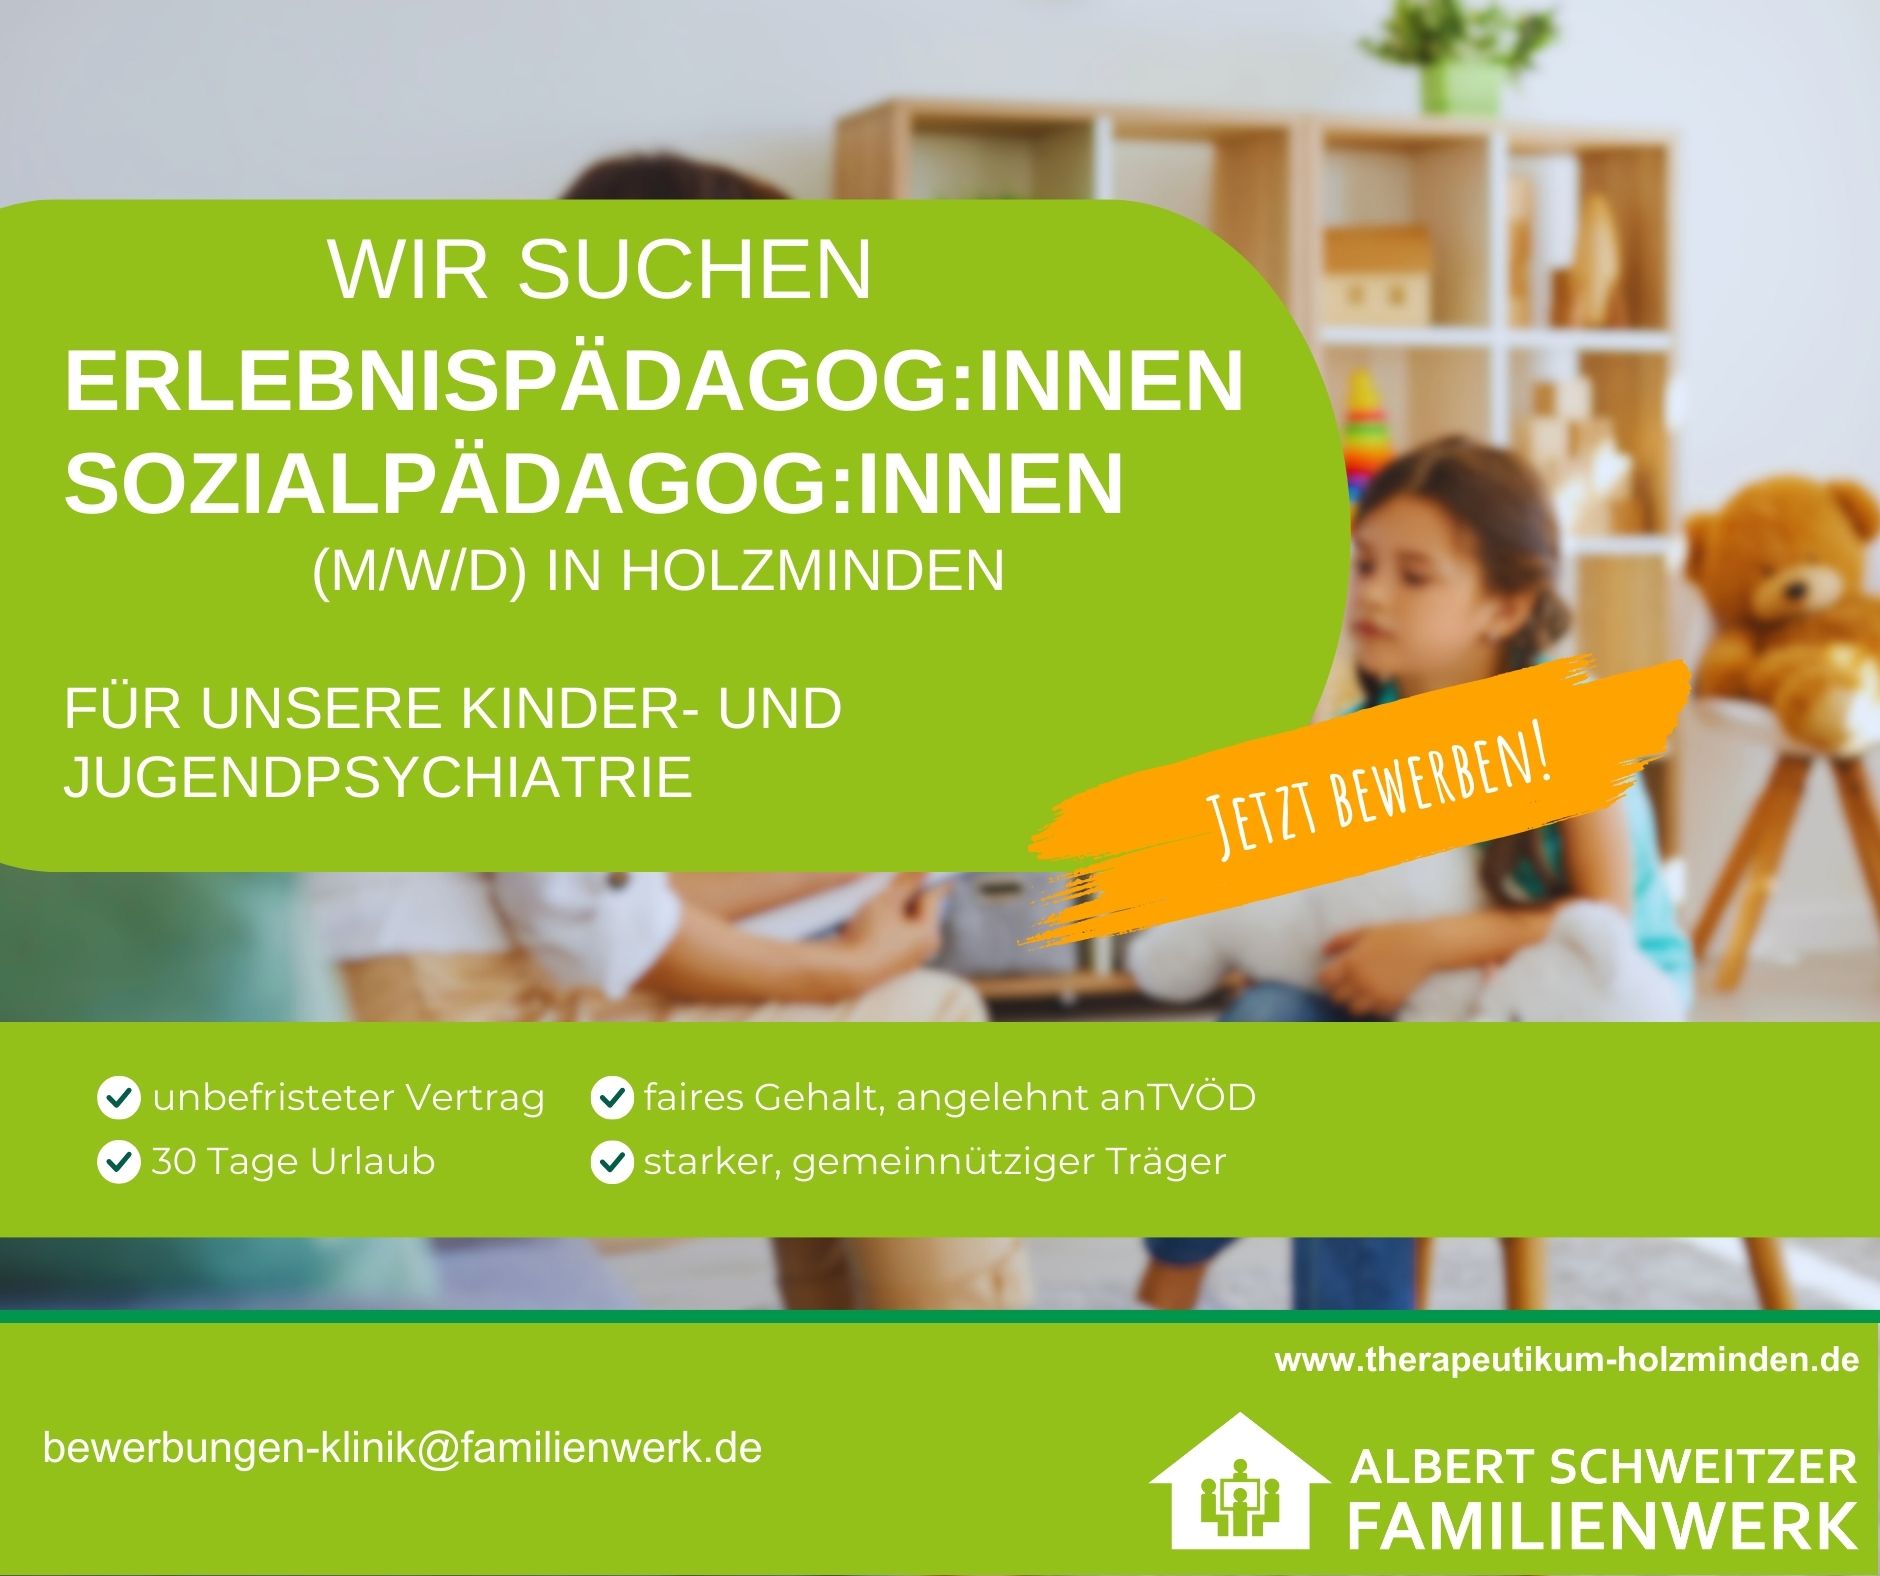 Wir suchen Erlebnispädagog:innen / Sozialpädagog:innen (m/w/d) in Holzminden - Albert Schweitzer Familienwerk 